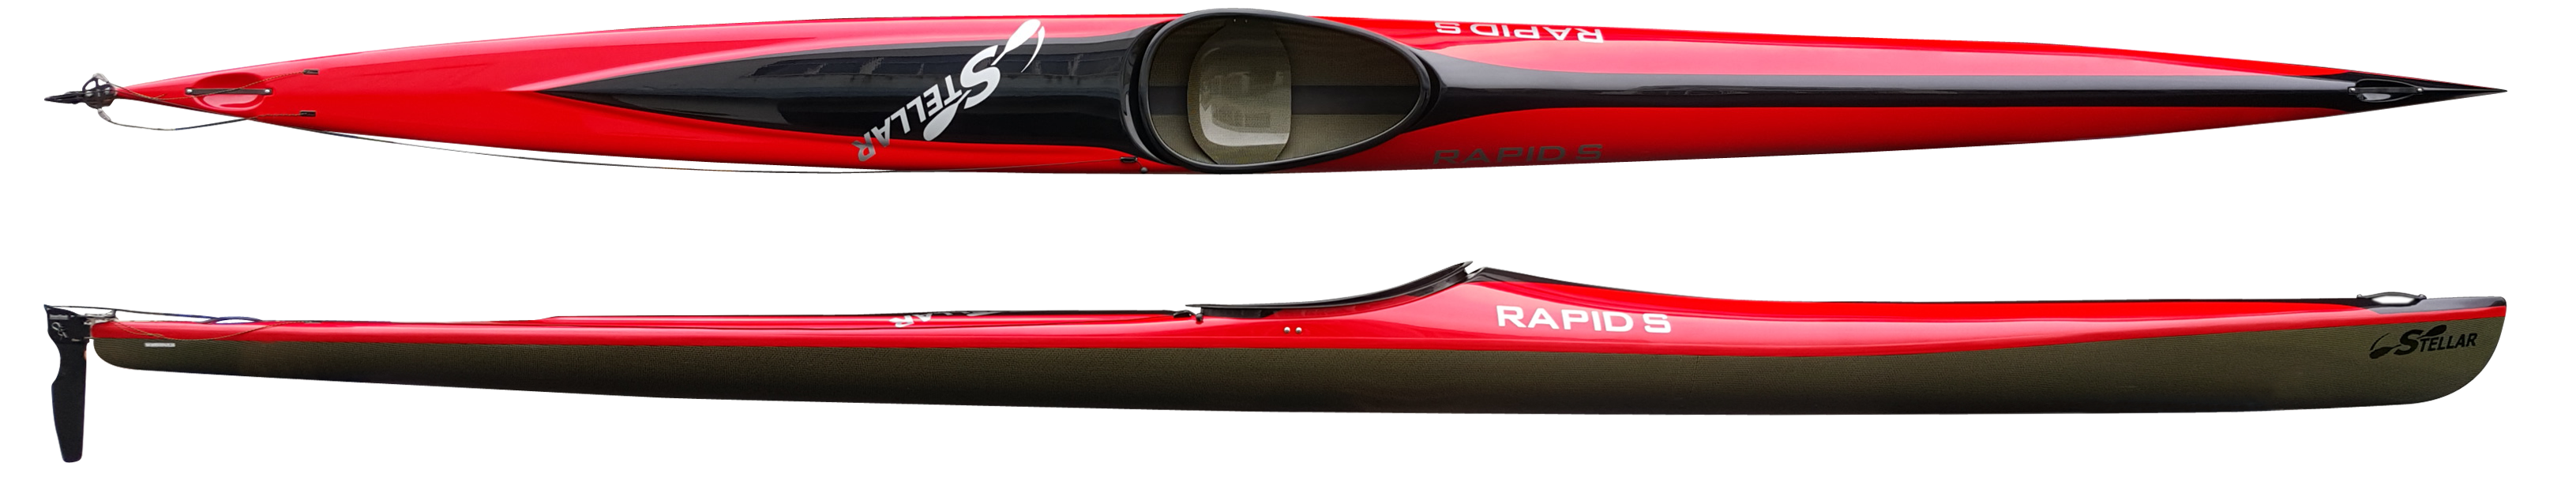 Kayaks: Rapid-S Multisport Kayak by Stellar Kayaks - Image 4721